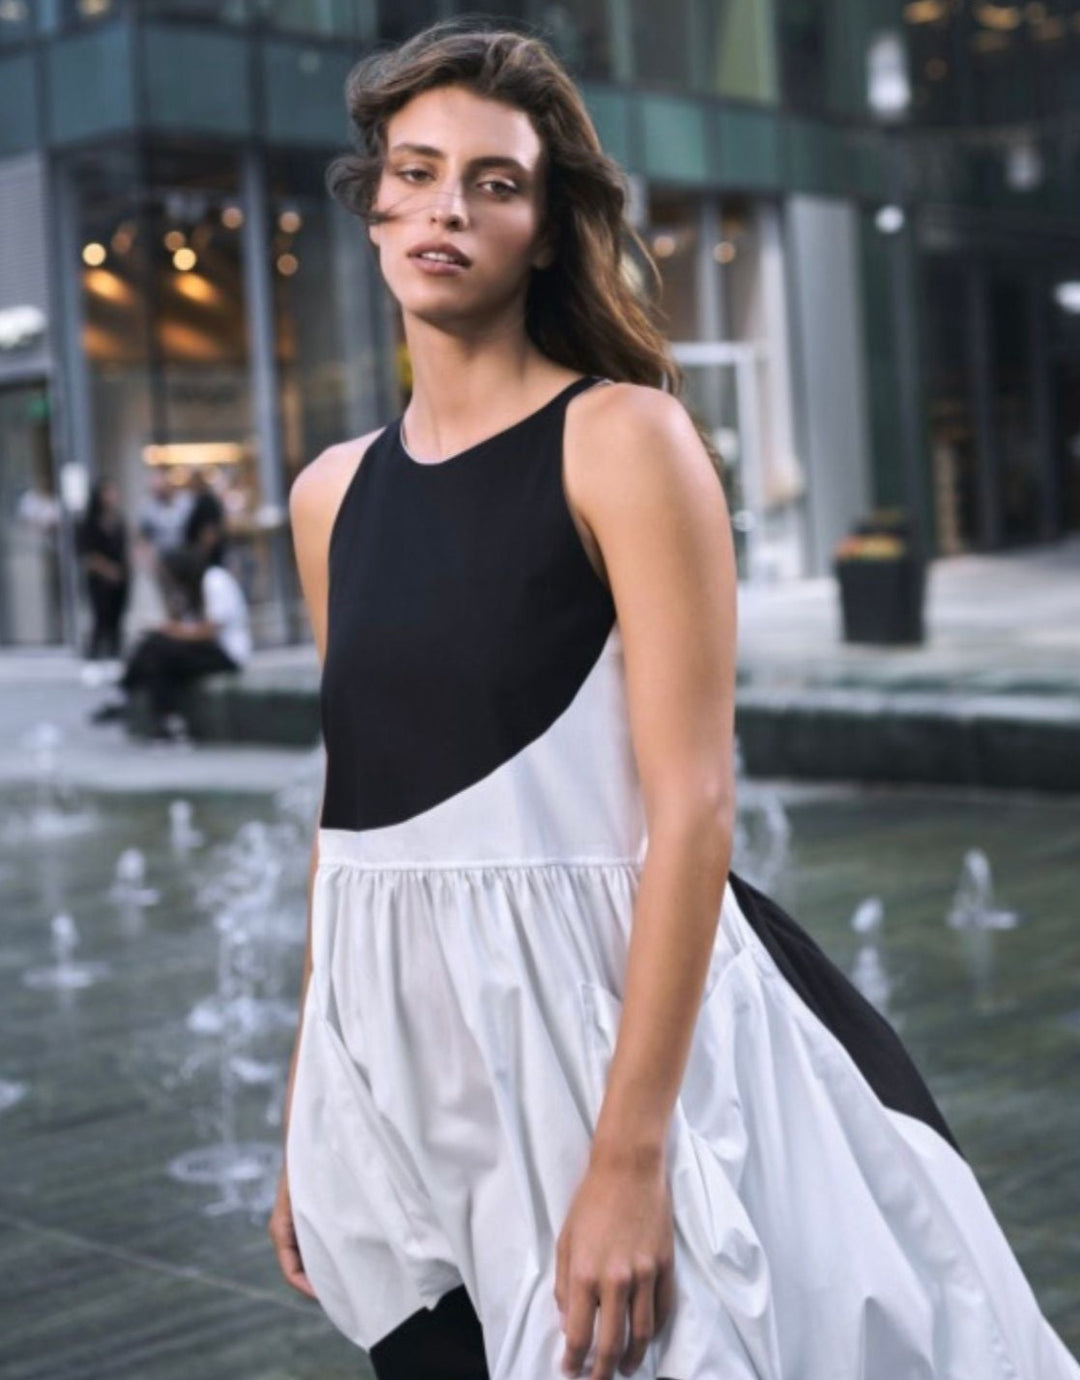 Urban Harper Pocket Dress, White/black